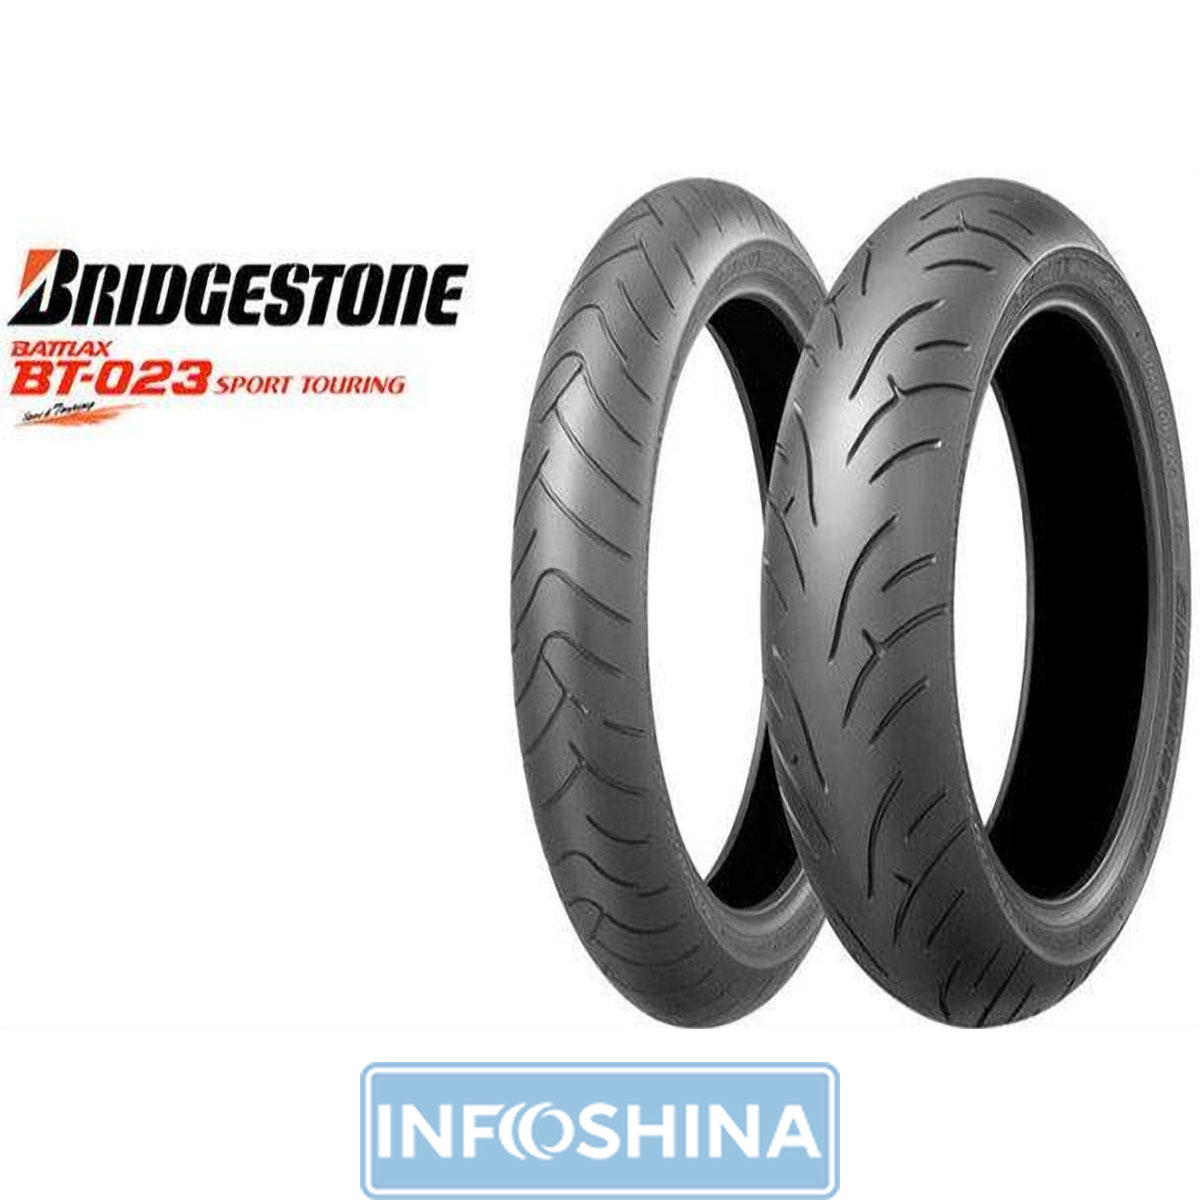 Купить шины Bridgestone S20 180/55 R17 73W